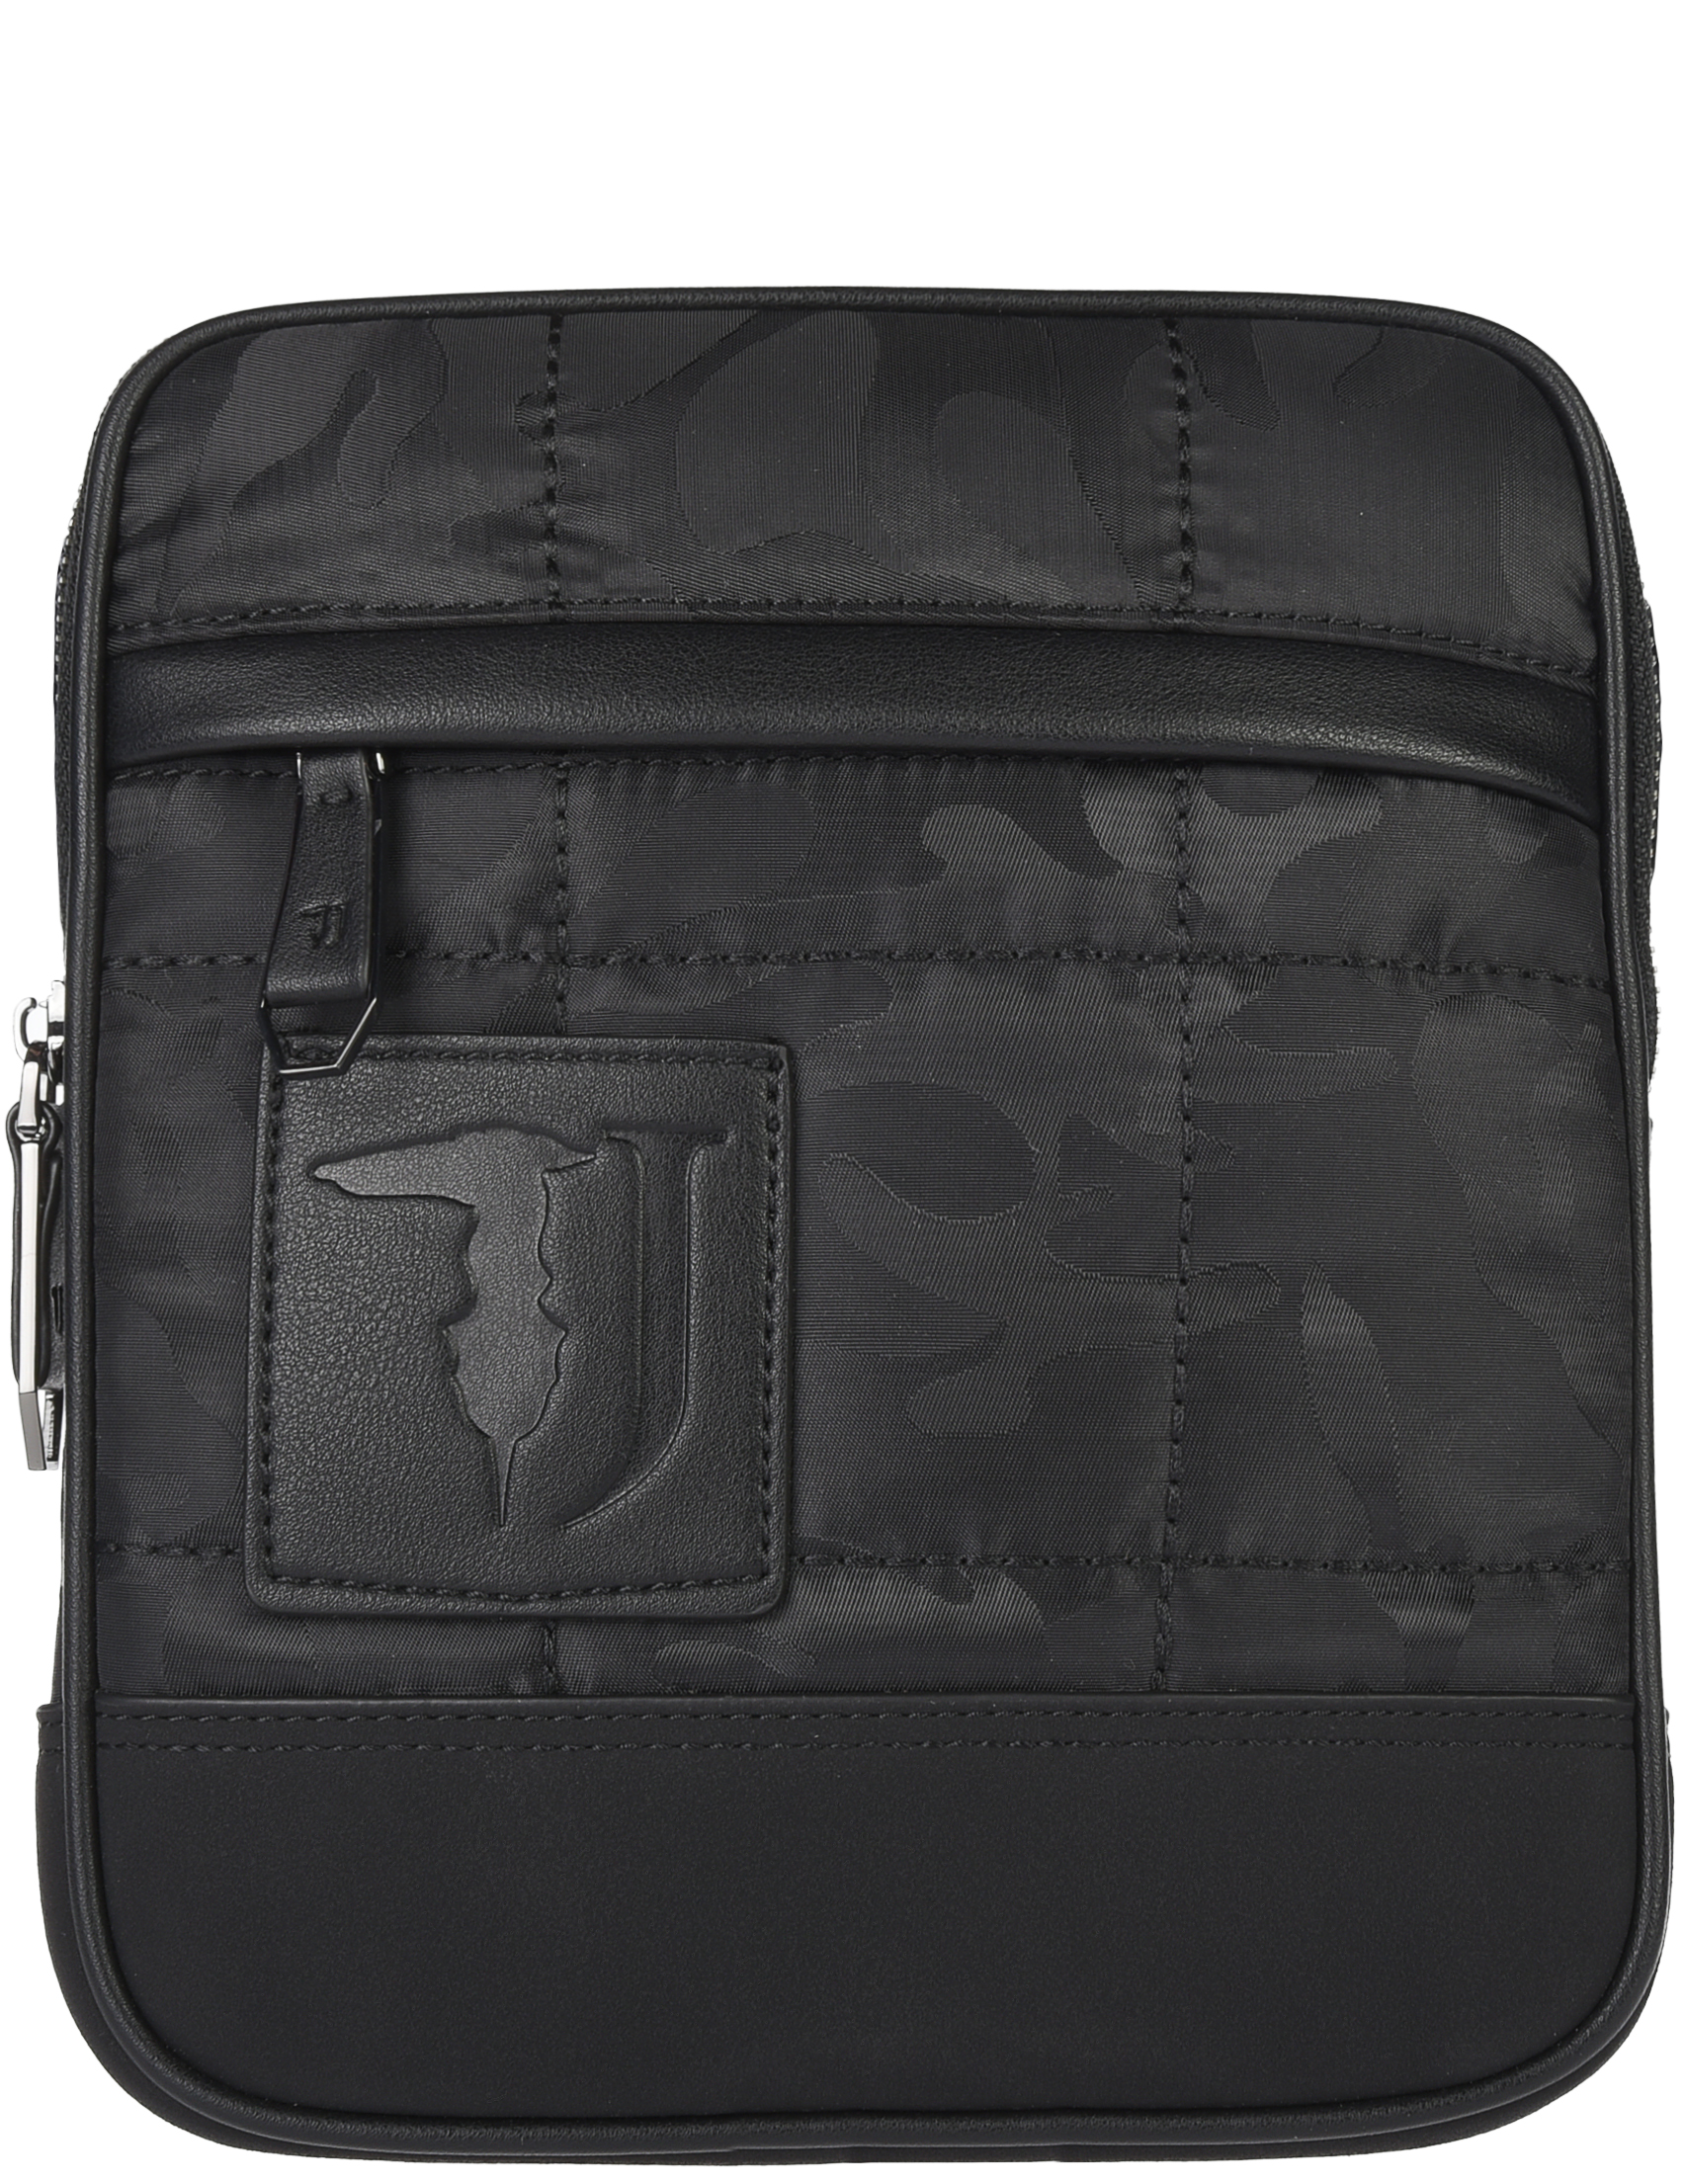 Мужская сумка Trussardi Jeans AGR-00103-K299_black